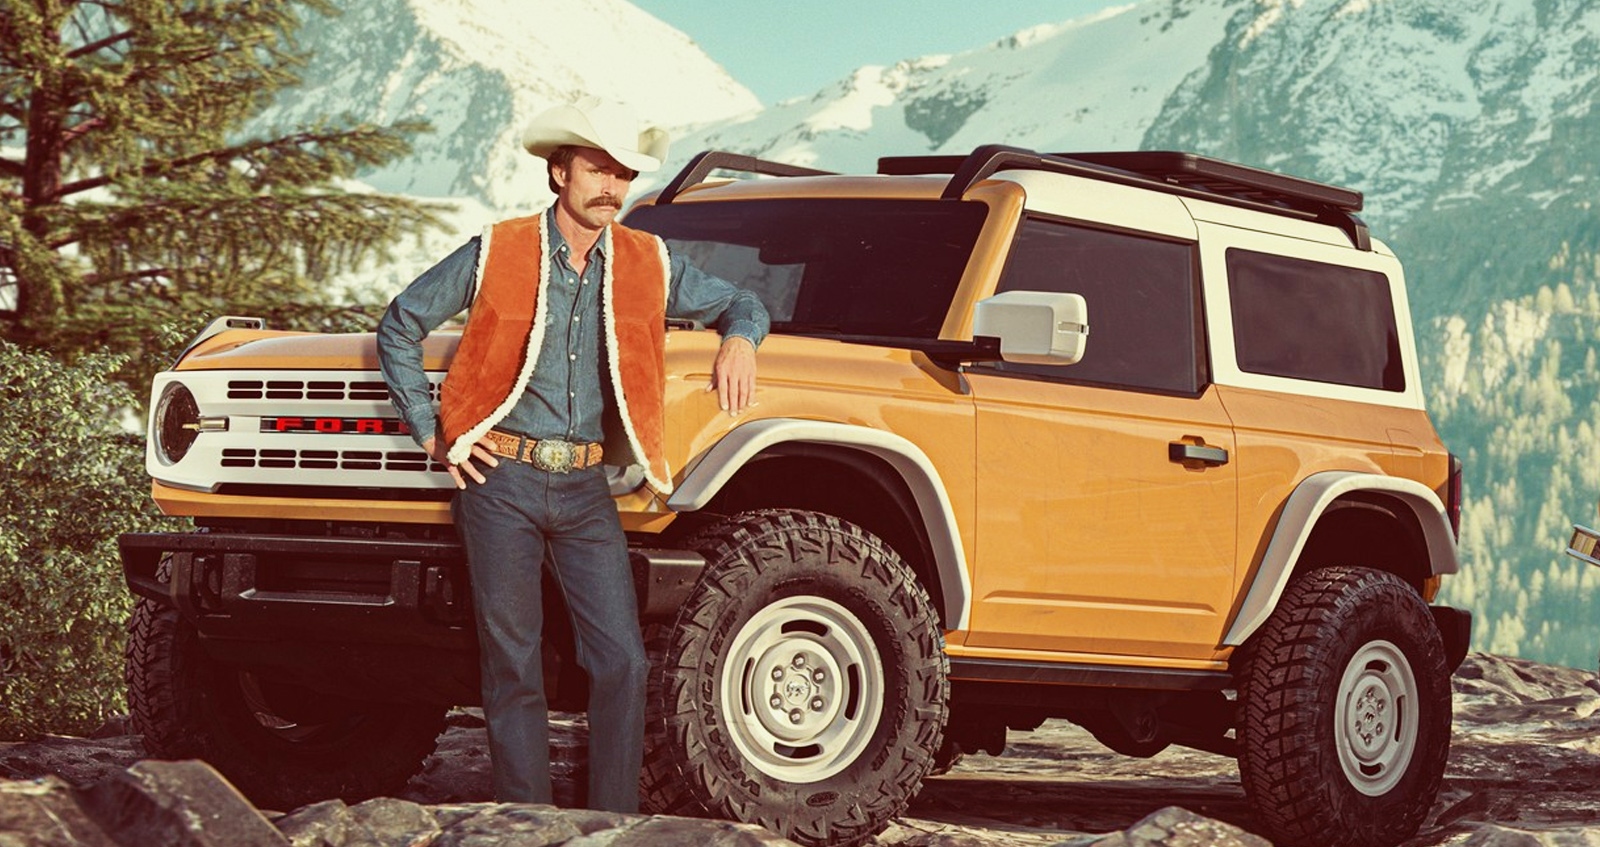 โฆษณาสั้น John Bronco กับรถสุดคลาสสิก Ford Bronco